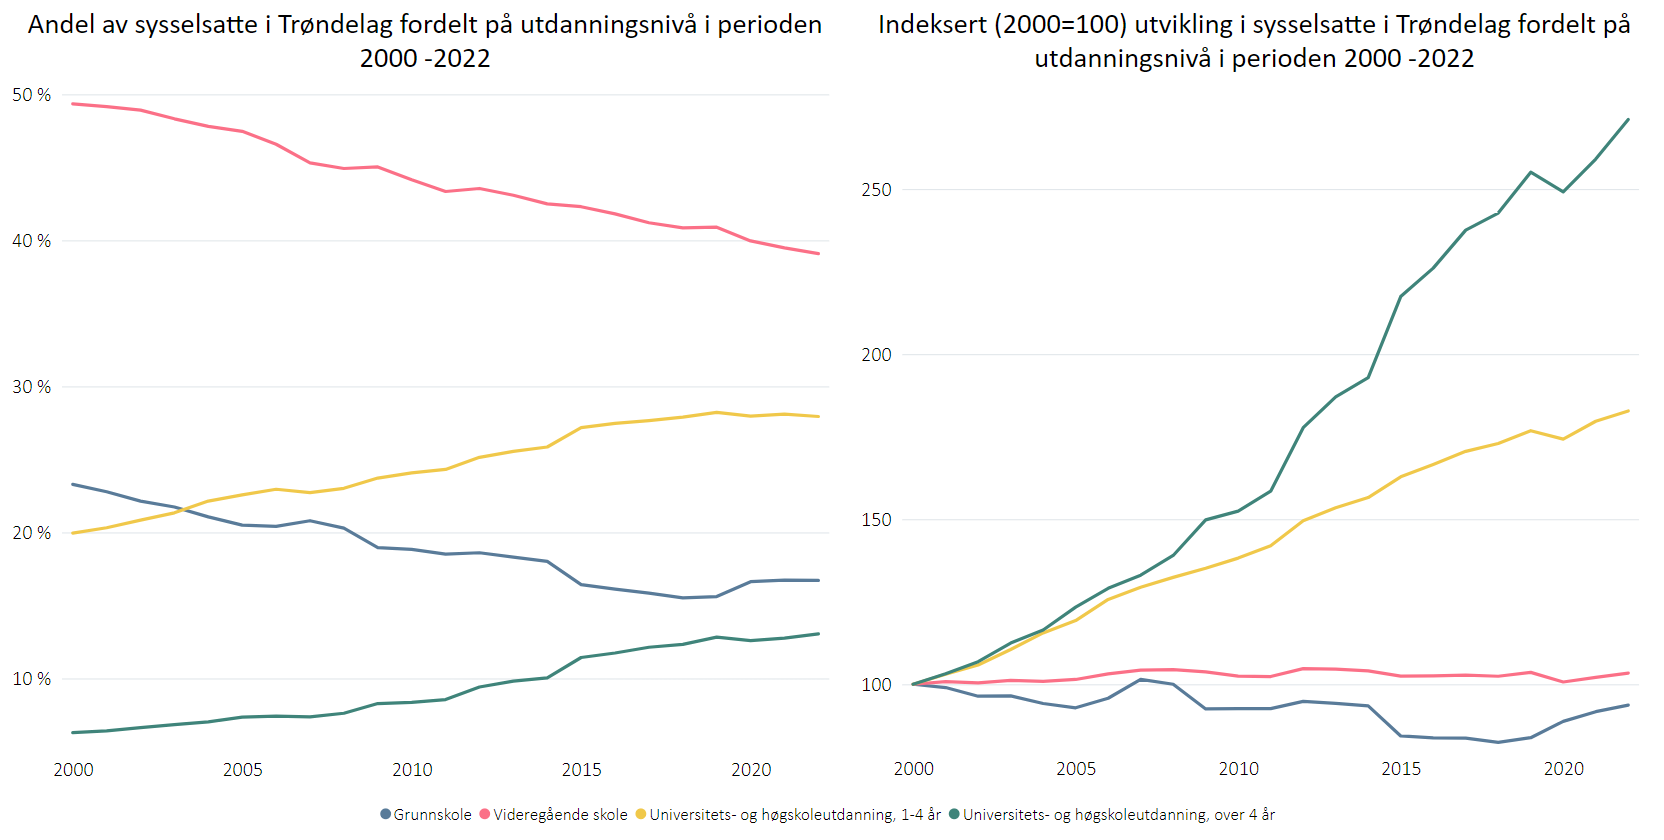  Navn Utvikling sysselsatte i Trøndelag fordelt på utdanningsnivå- 2000-2022